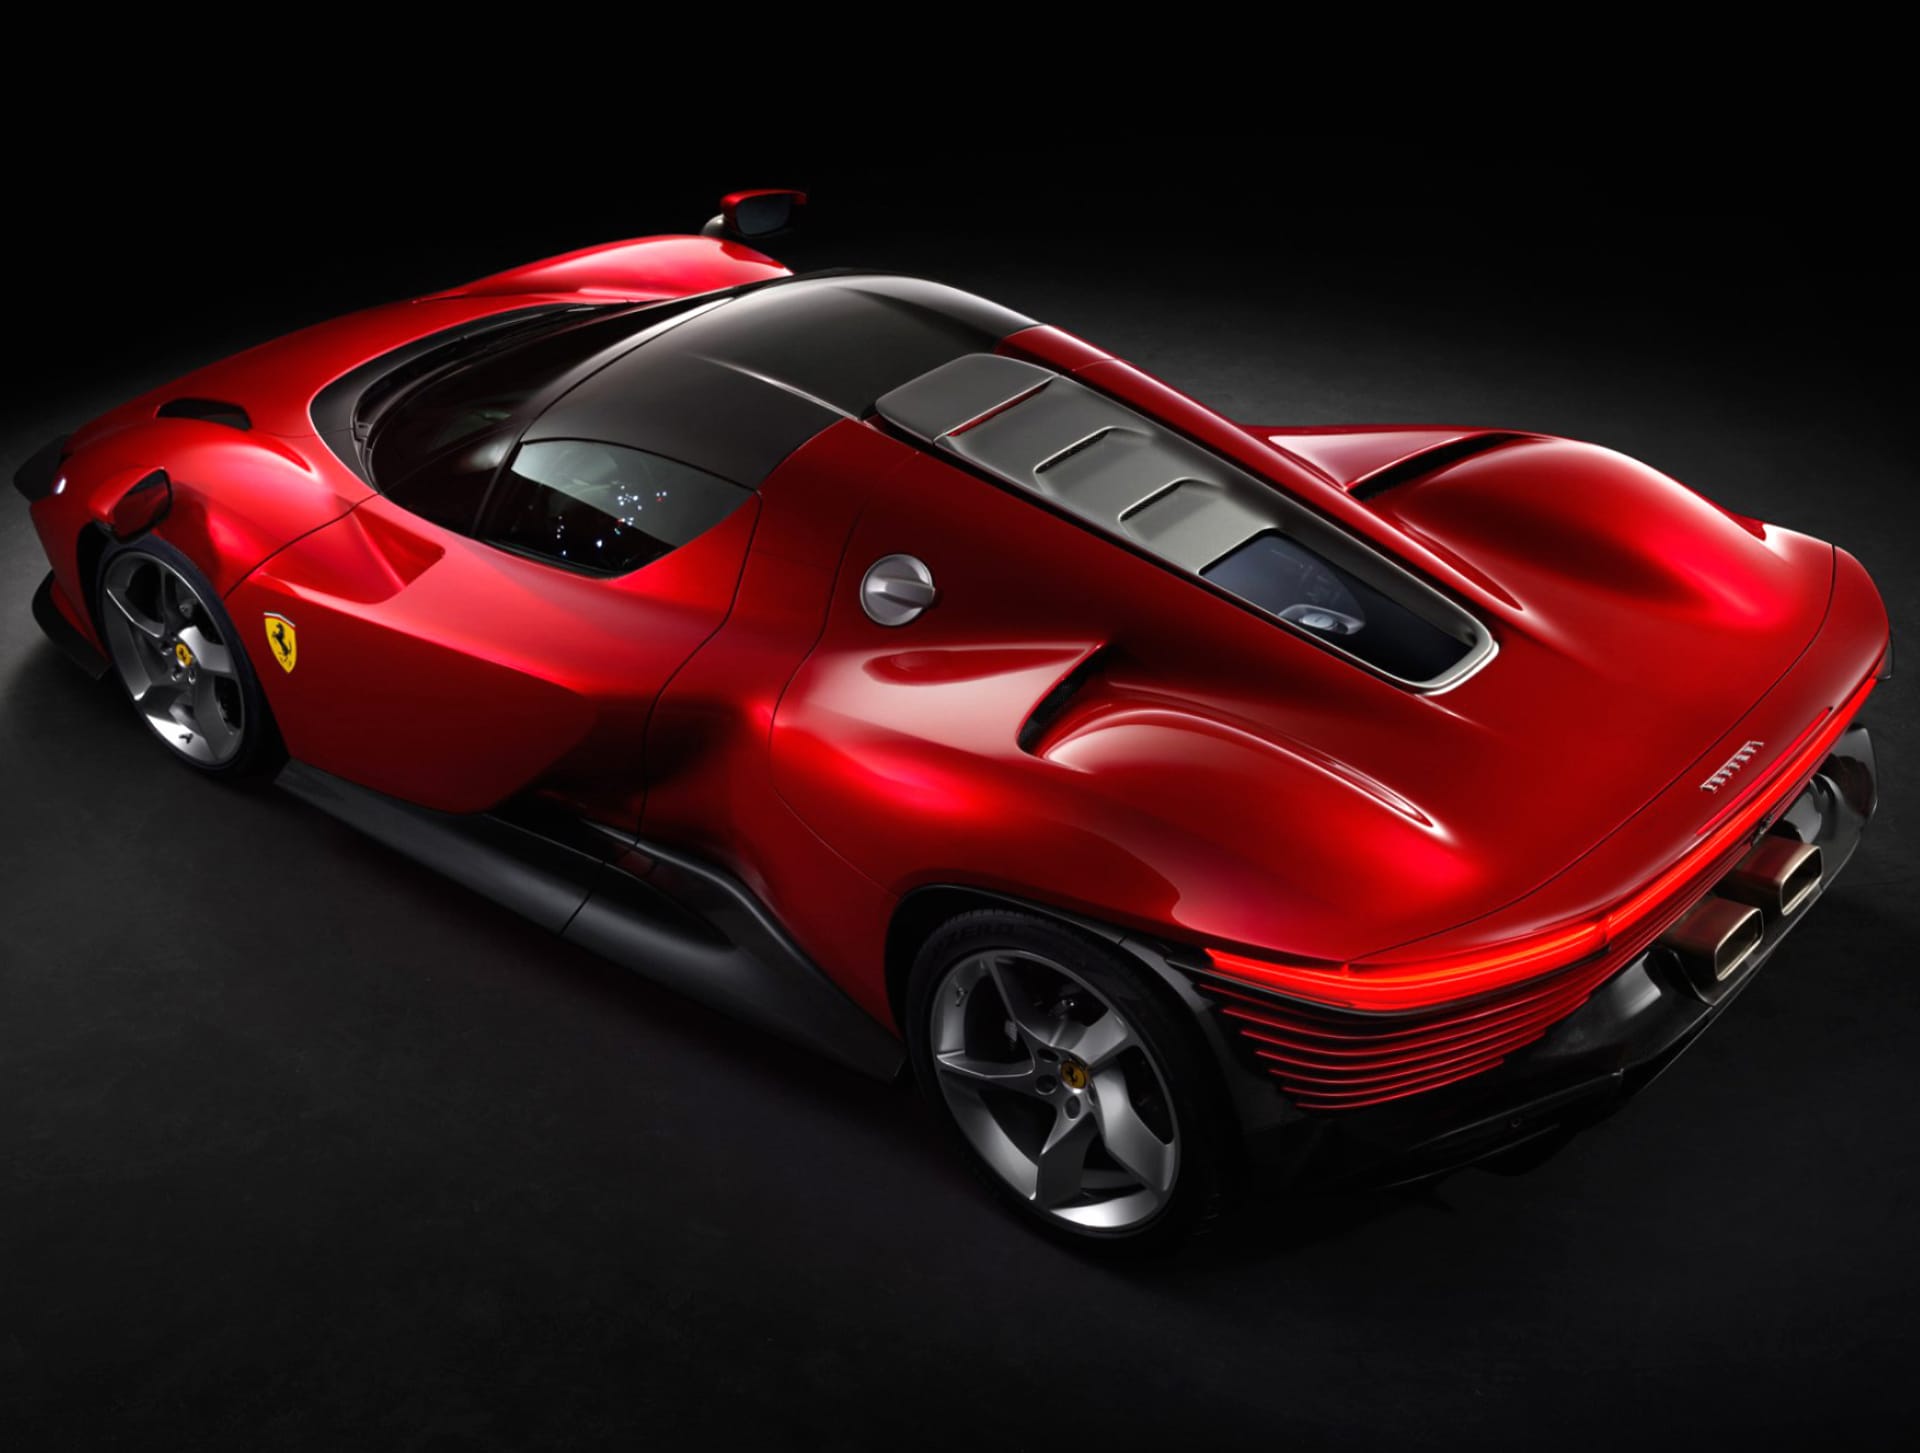 Ferrari Daytona SP3 at 2048 x 2048 iPad size wallpapers HD quality